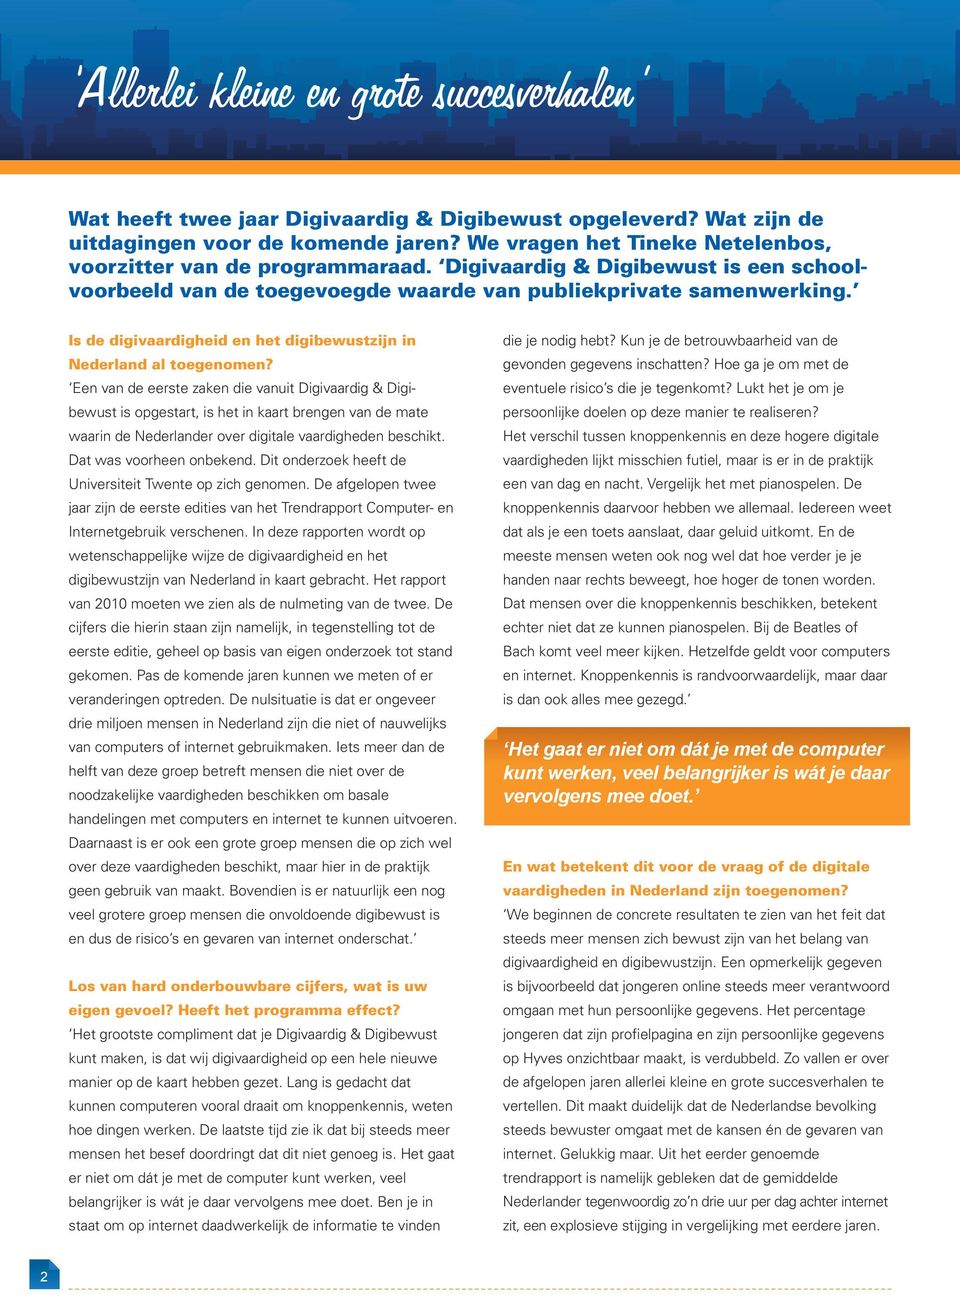 Is de digivaardigheid en het digibewustzijn in Nederland al toegenomen?